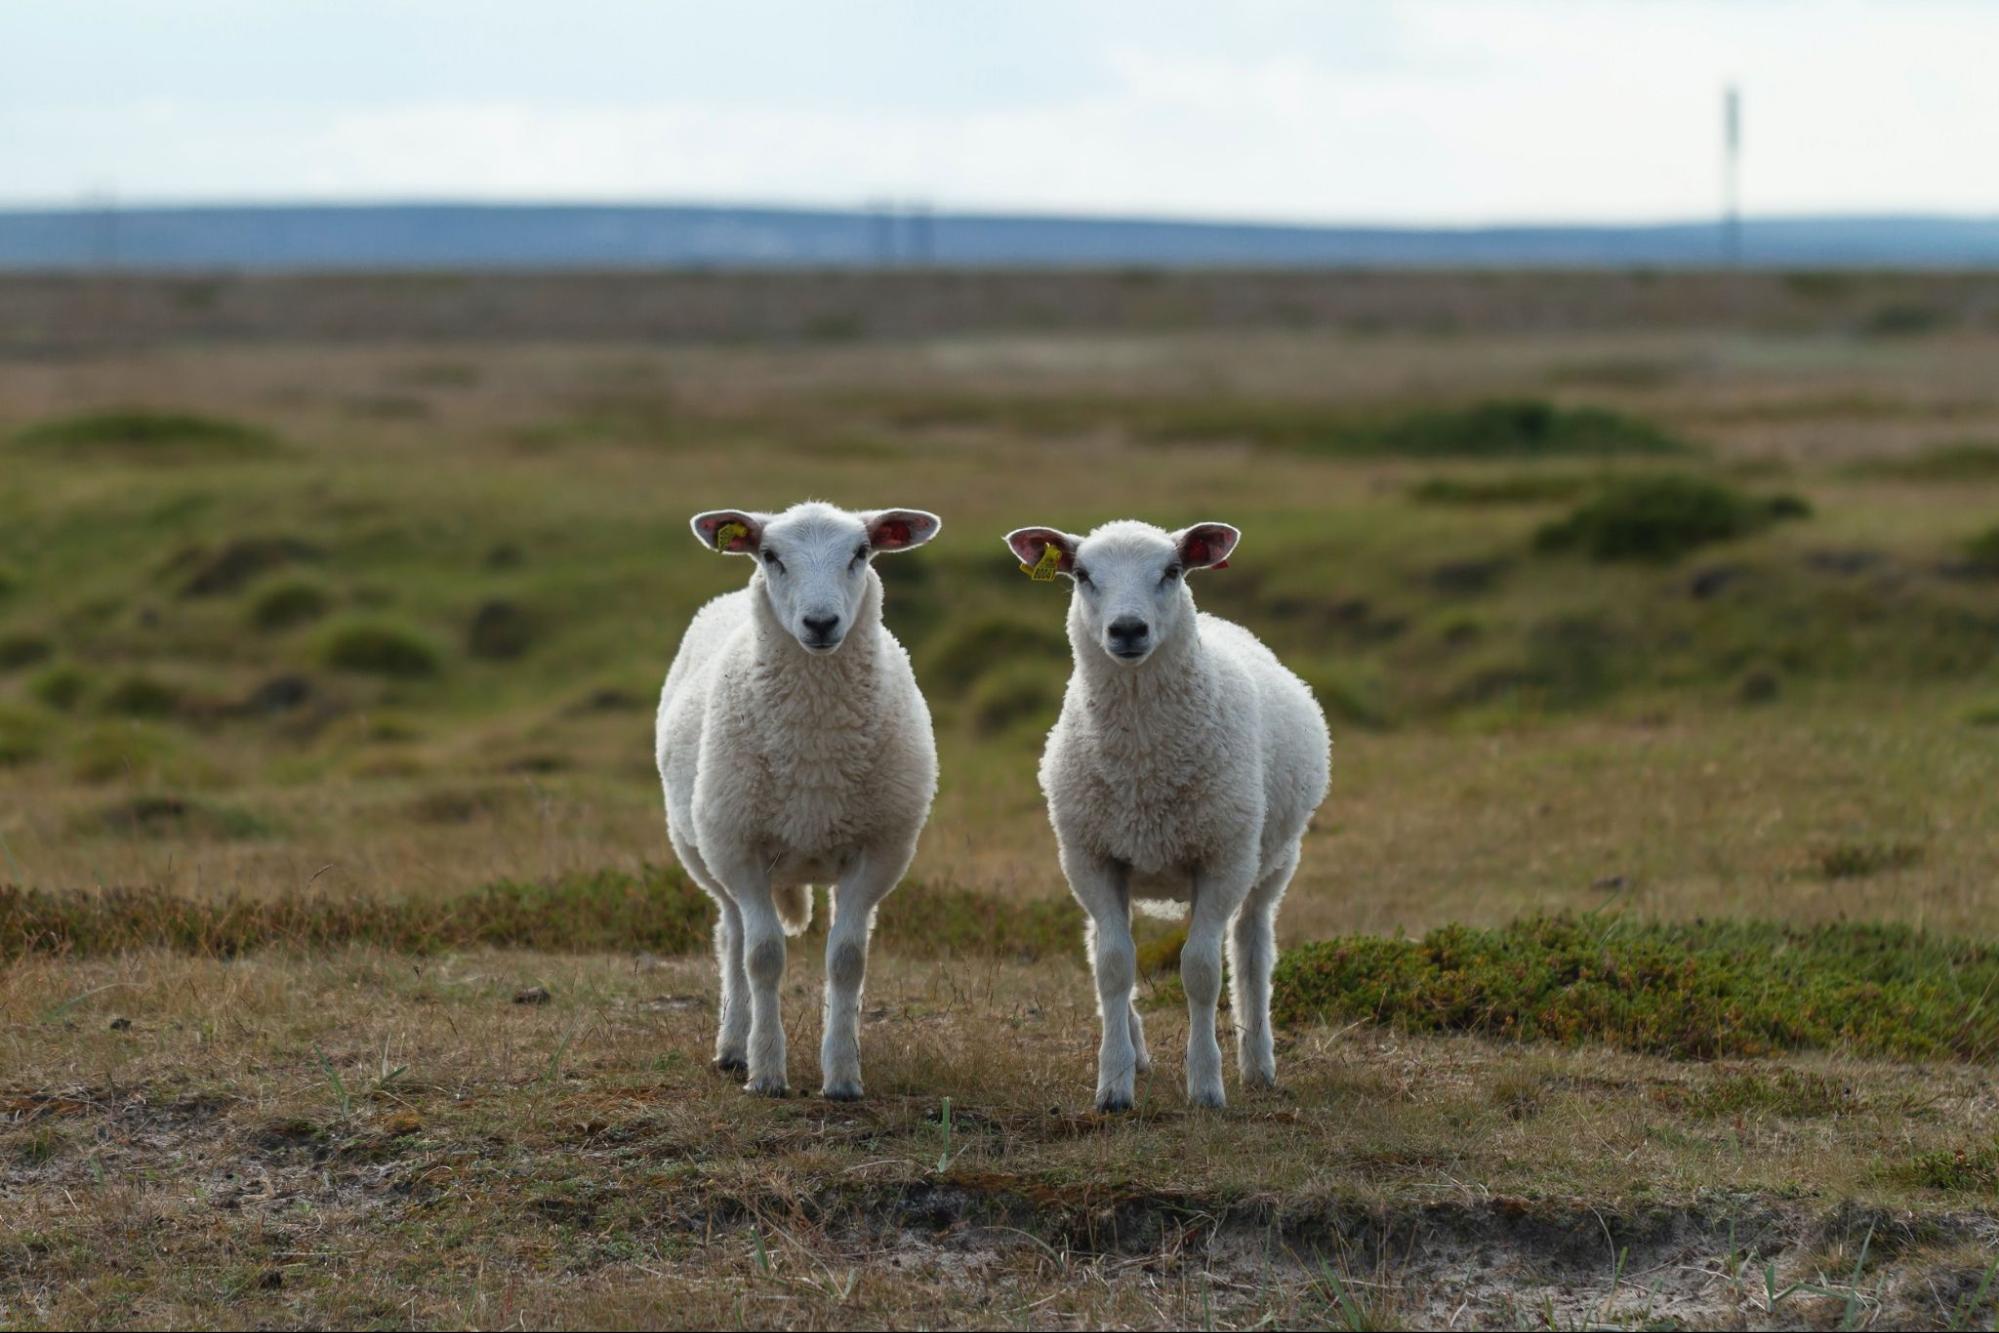 Lookalike sheeps in the farm